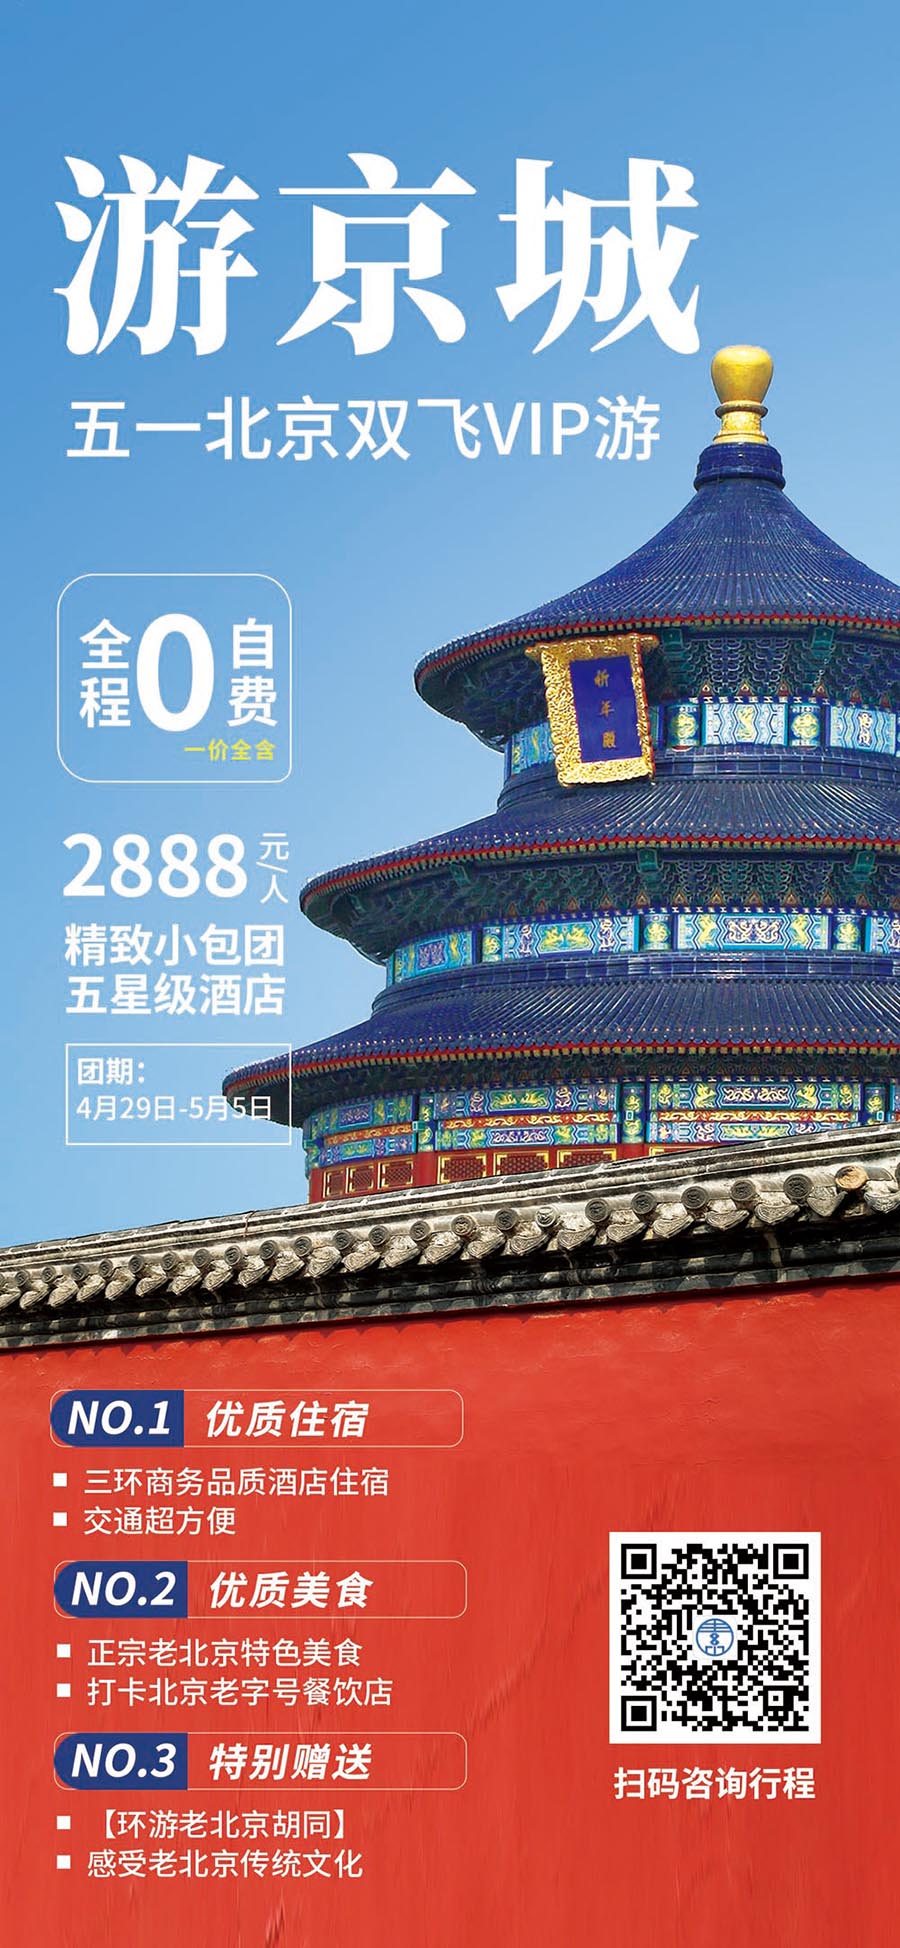 简约劳动节五一北京旅游促销宣传海报